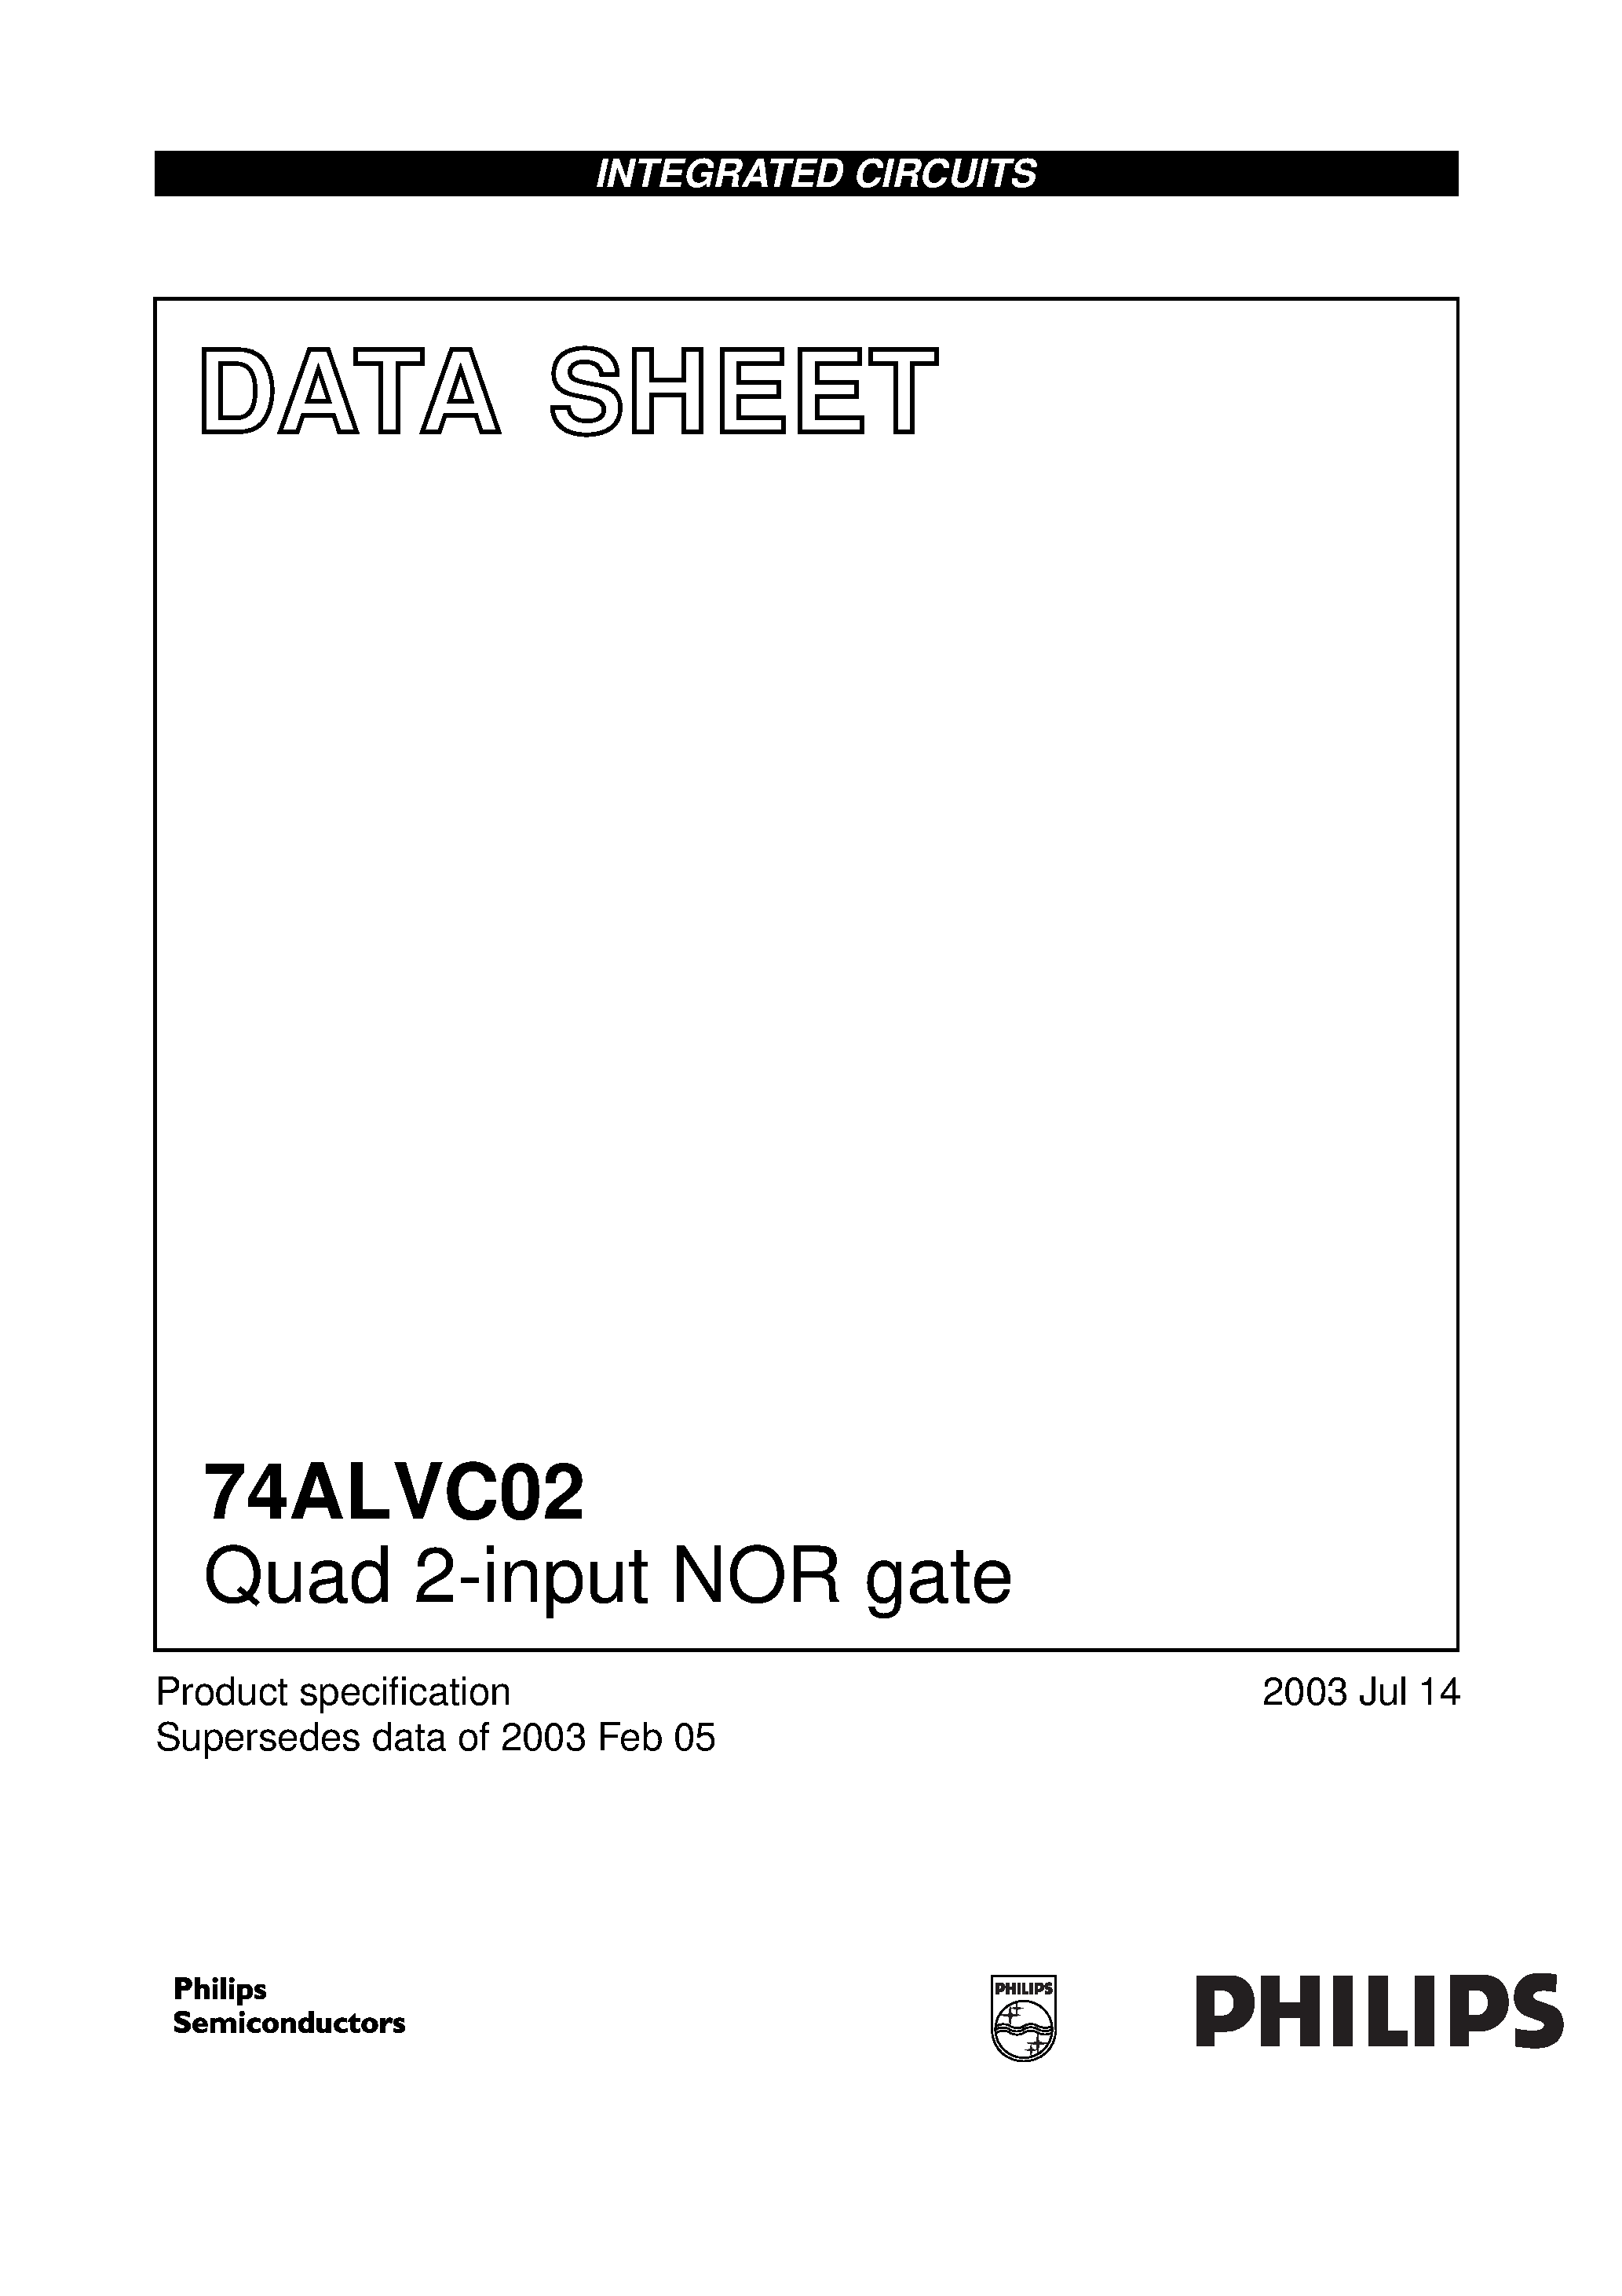 Даташит 74ALVC02PW - Quad 2-input NOR gate страница 1